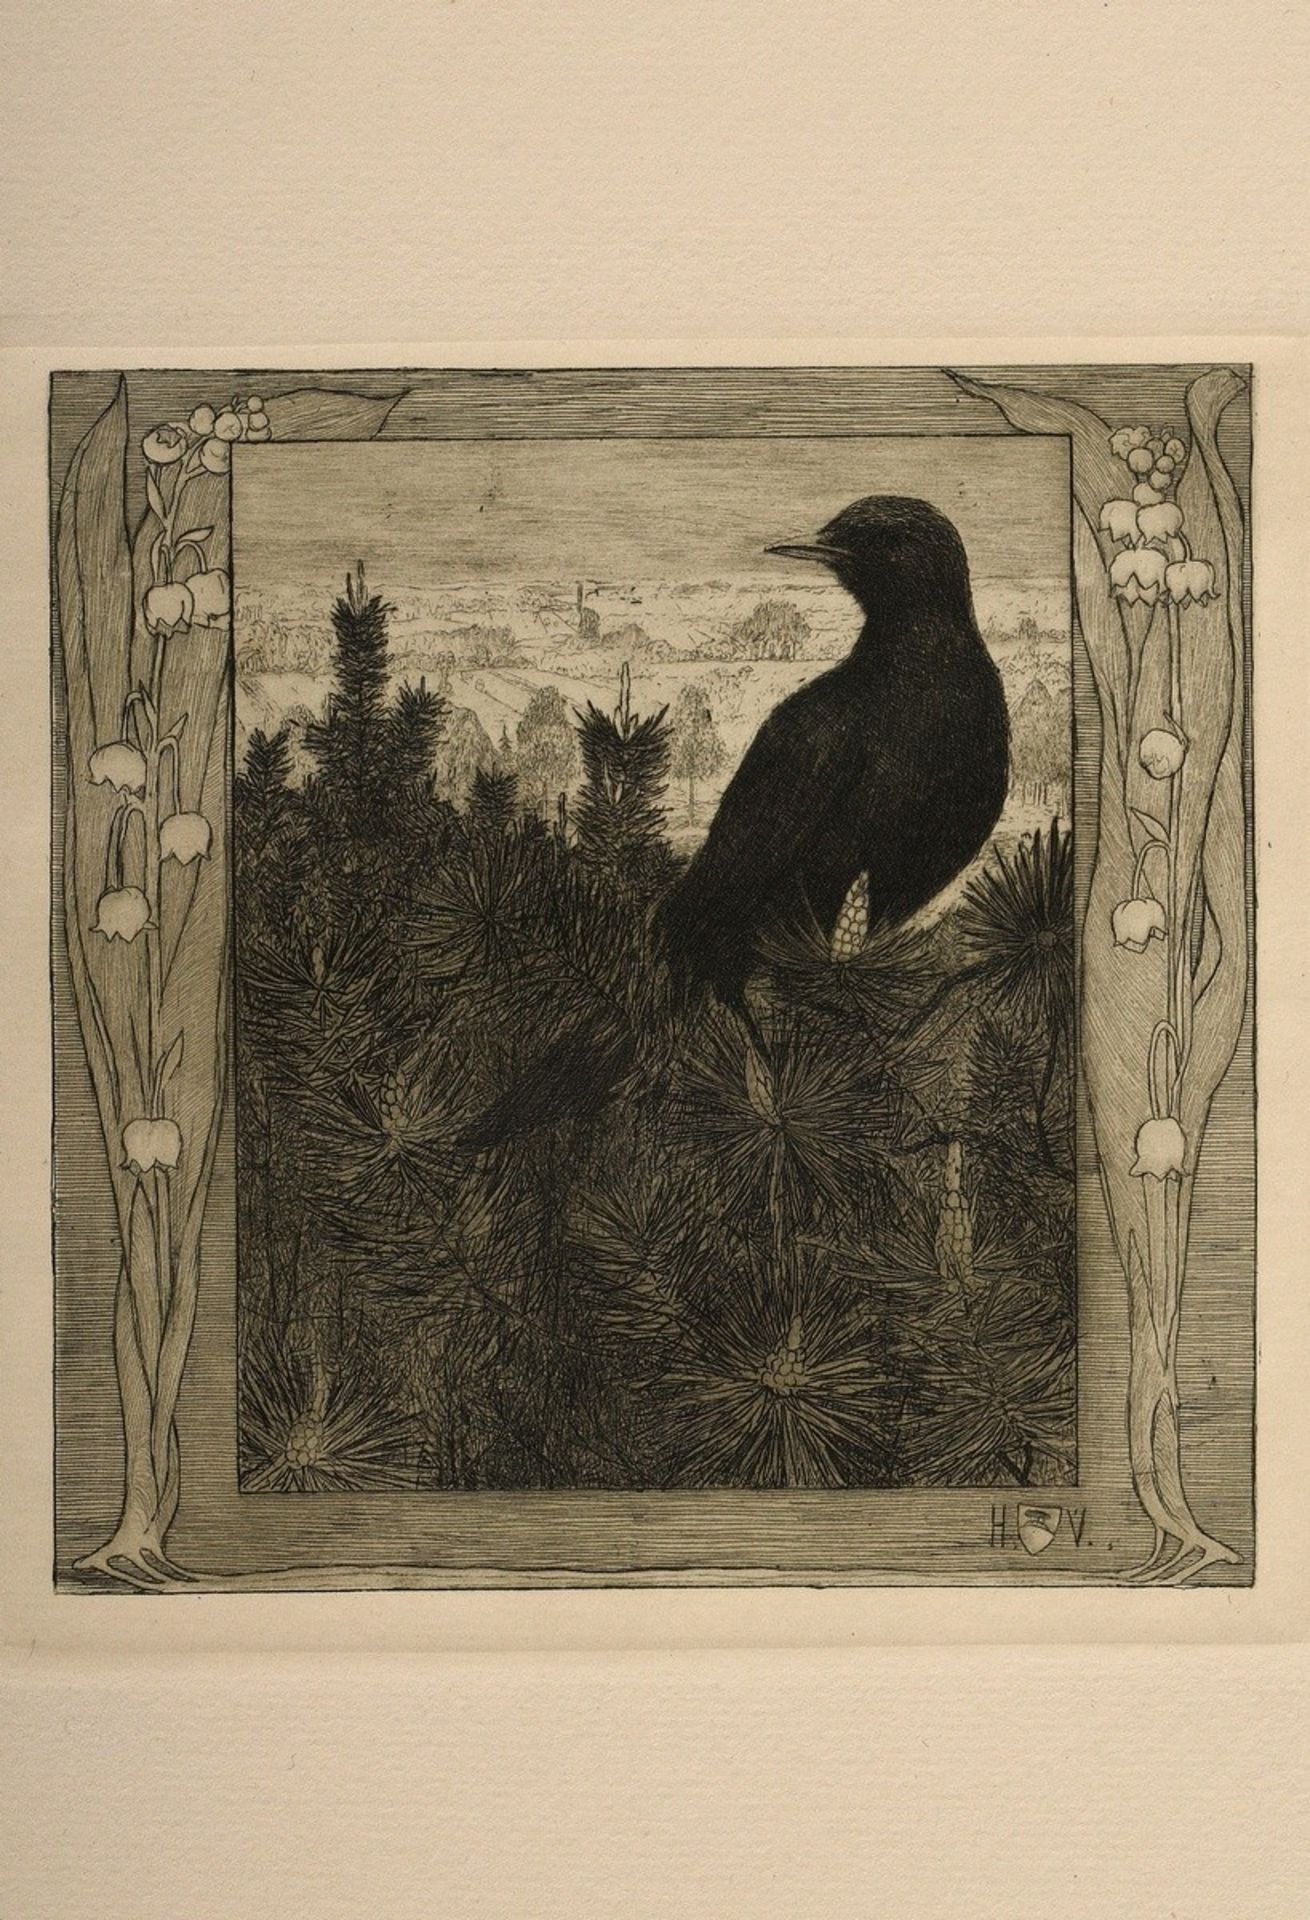 Vogeler, Heinrich (1872-1942) "An den Frühling" 1899/1901, portfolio with 10 etchings and prelimina - Image 11 of 25